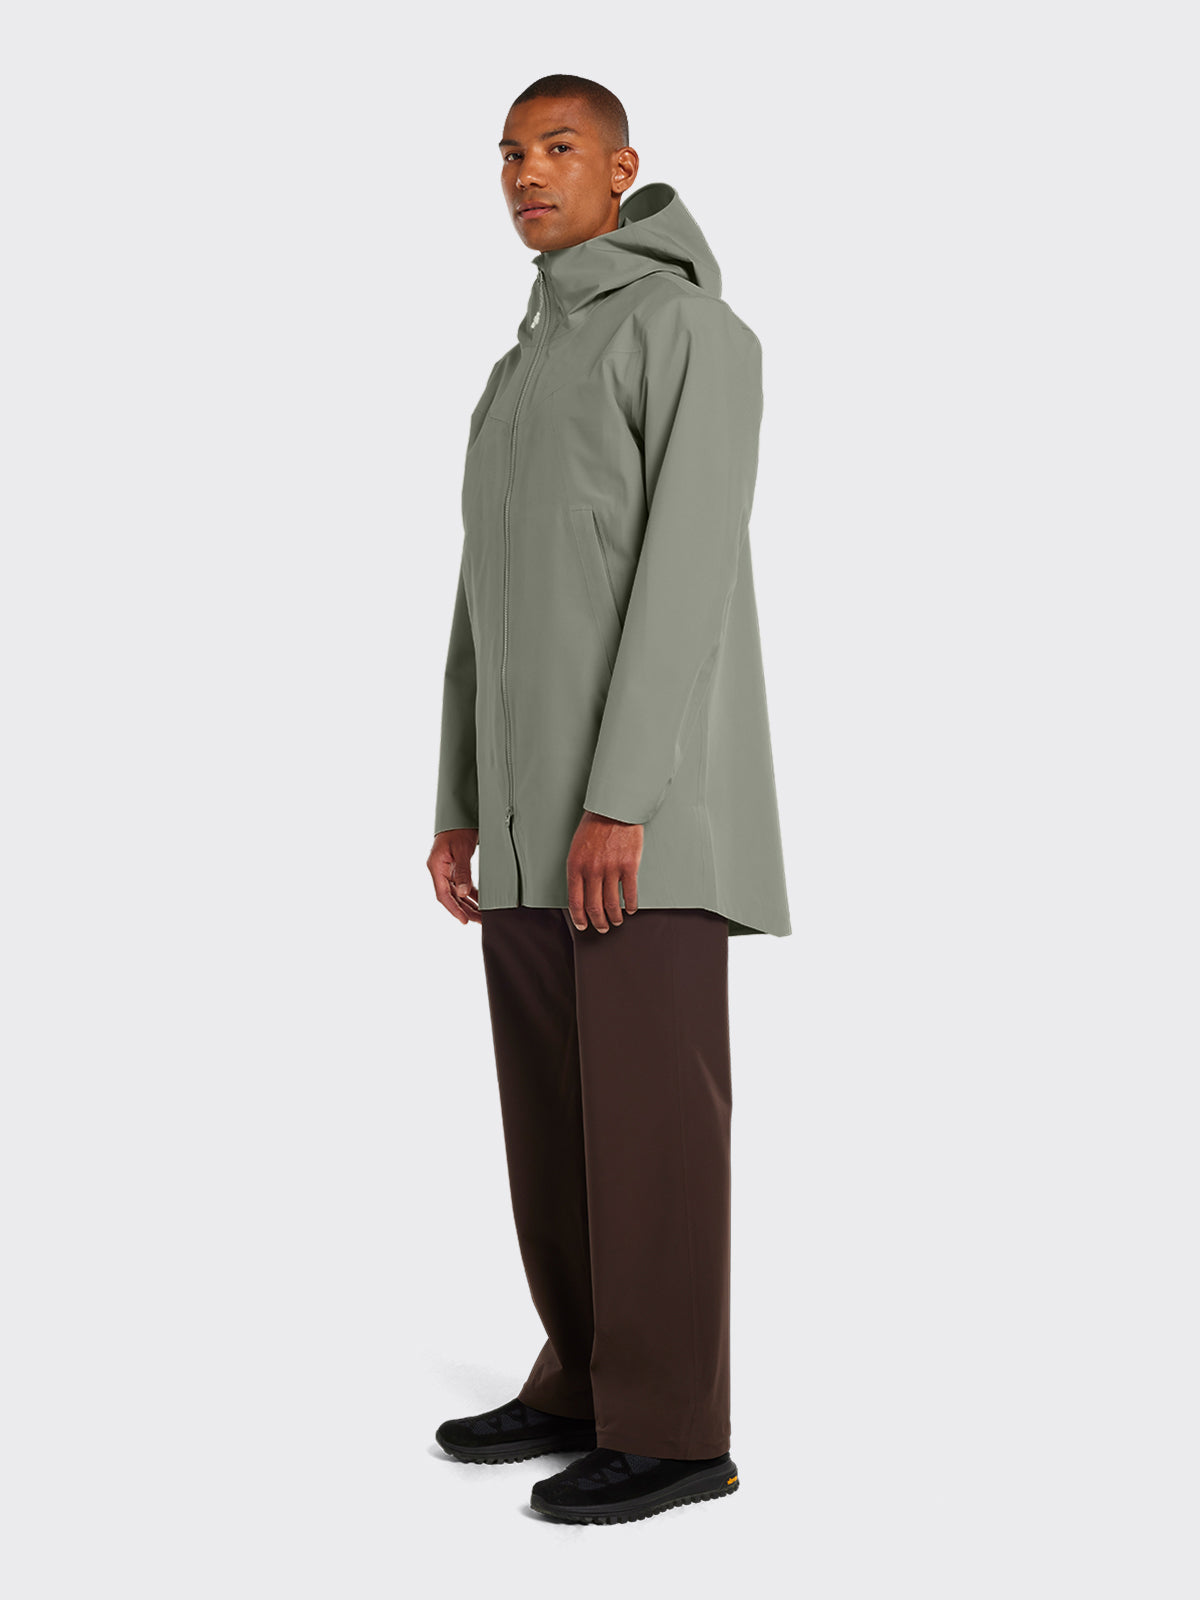 Model wearing Helleren coat from Blæst in the color Vetiver